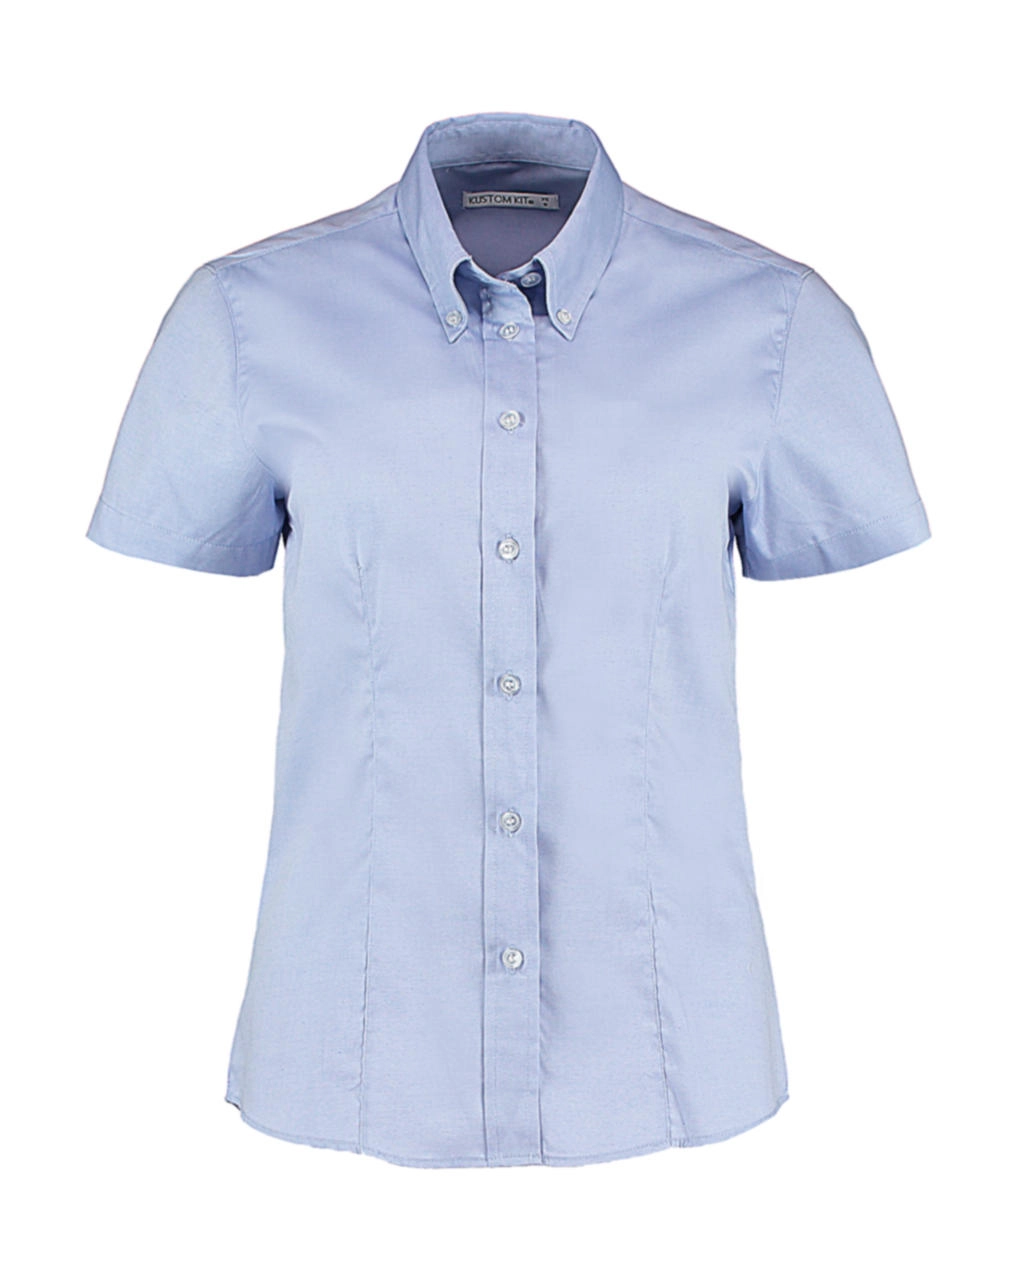 Women`s Tailored Fit Premium Oxford Shirt SSL zum Besticken und Bedrucken in der Farbe Light Blue mit Ihren Logo, Schriftzug oder Motiv.